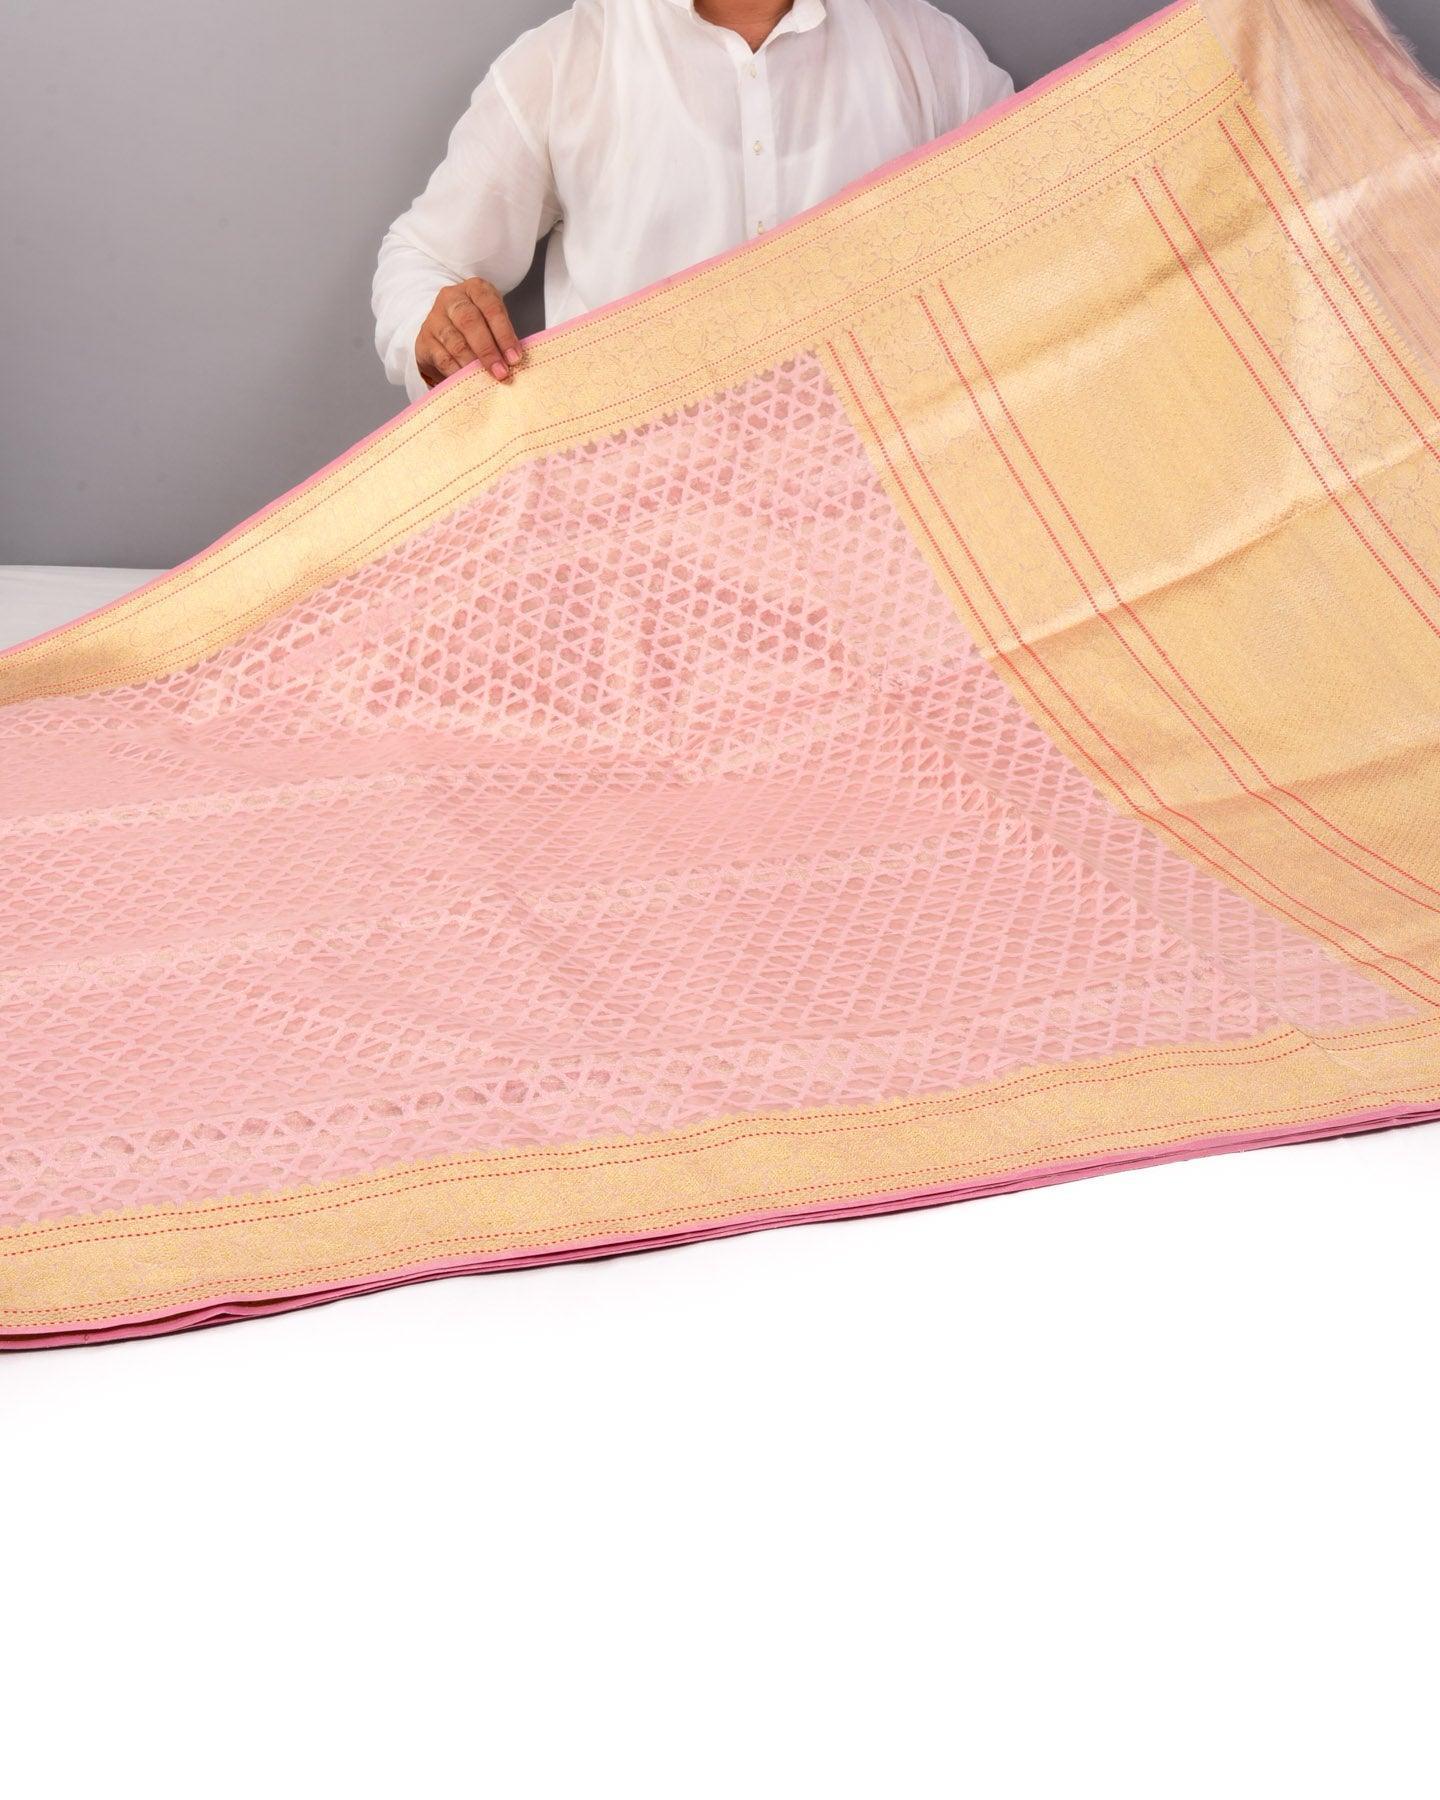 Misty Rose Pink Banarasi "STAR" Cutwork Brocade Handwoven Kora Tissue Saree - By HolyWeaves, Benares